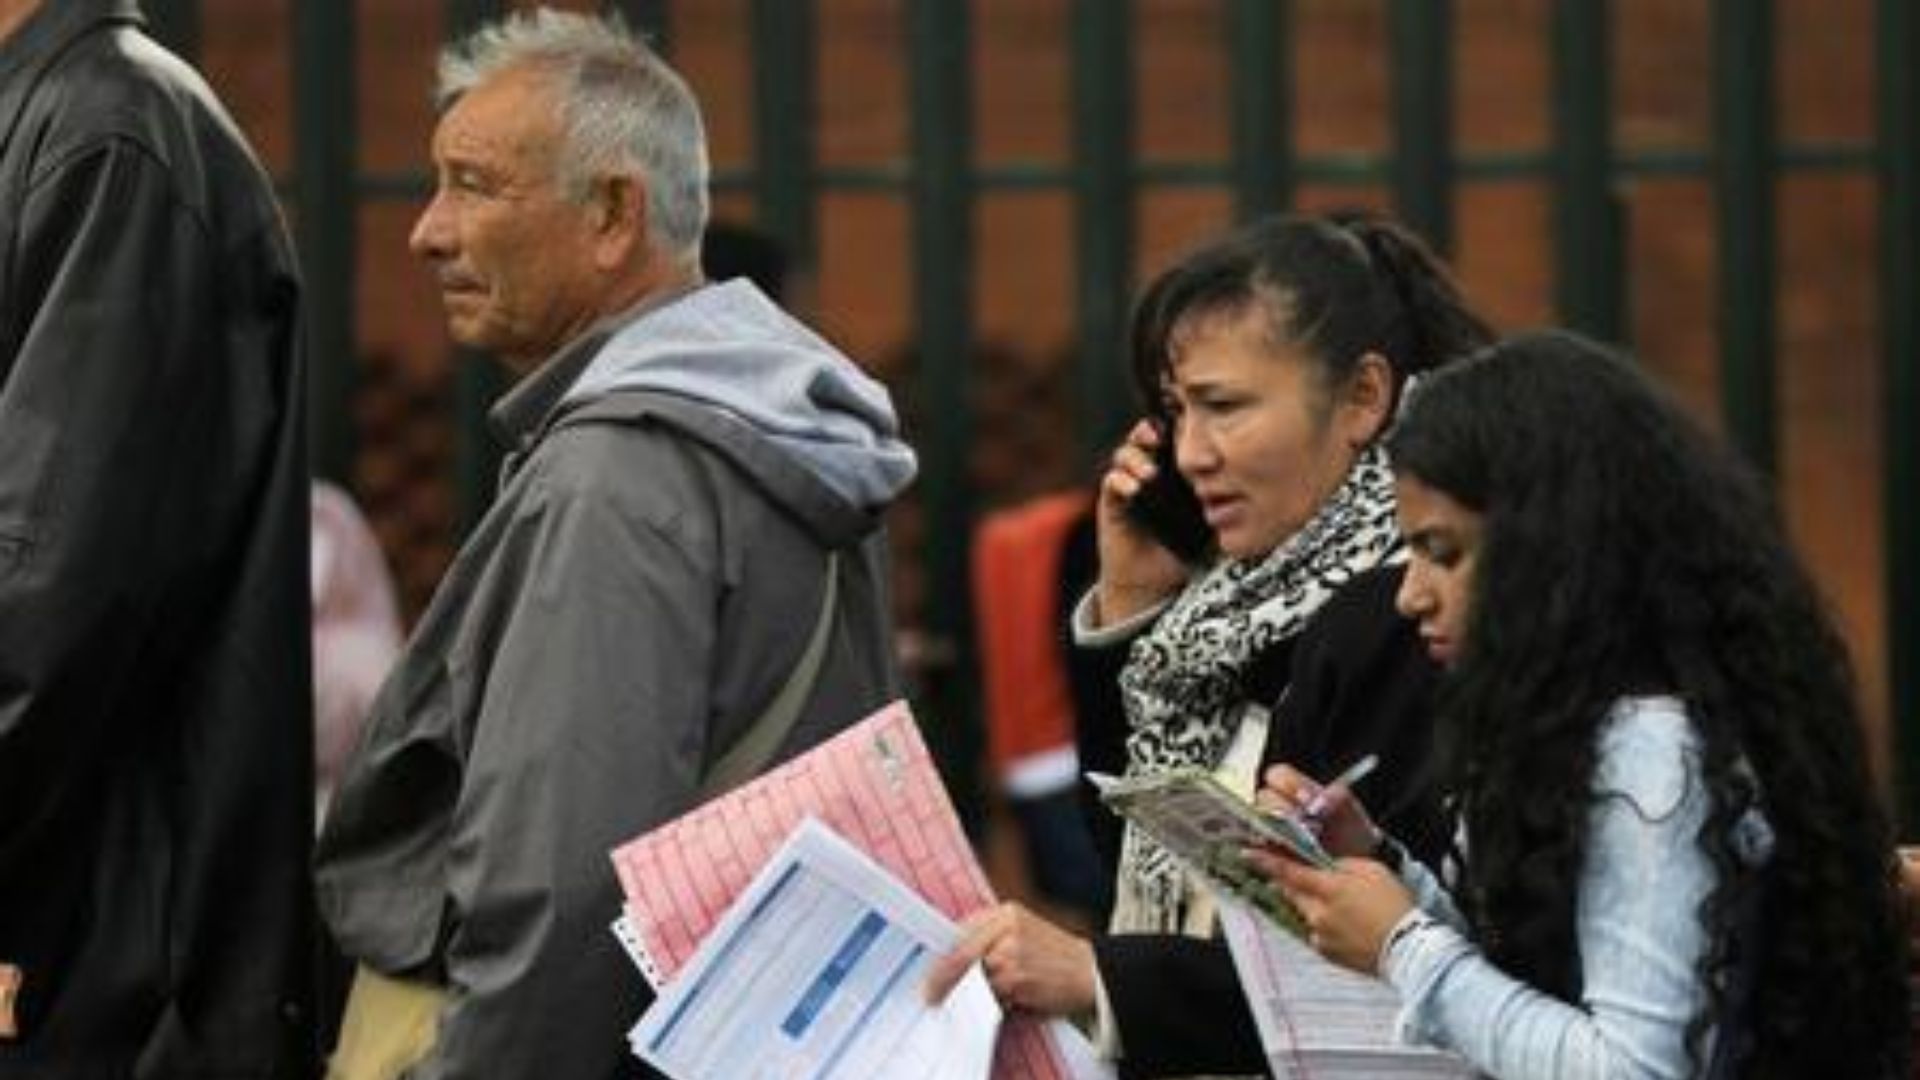 Foto de archivo. Personas hacen fila para entregar sus aplicaciones en búsqueda de empleo en Bogotá, Colombia, 31 de mayo, 2019. REUTERS/Luisa González